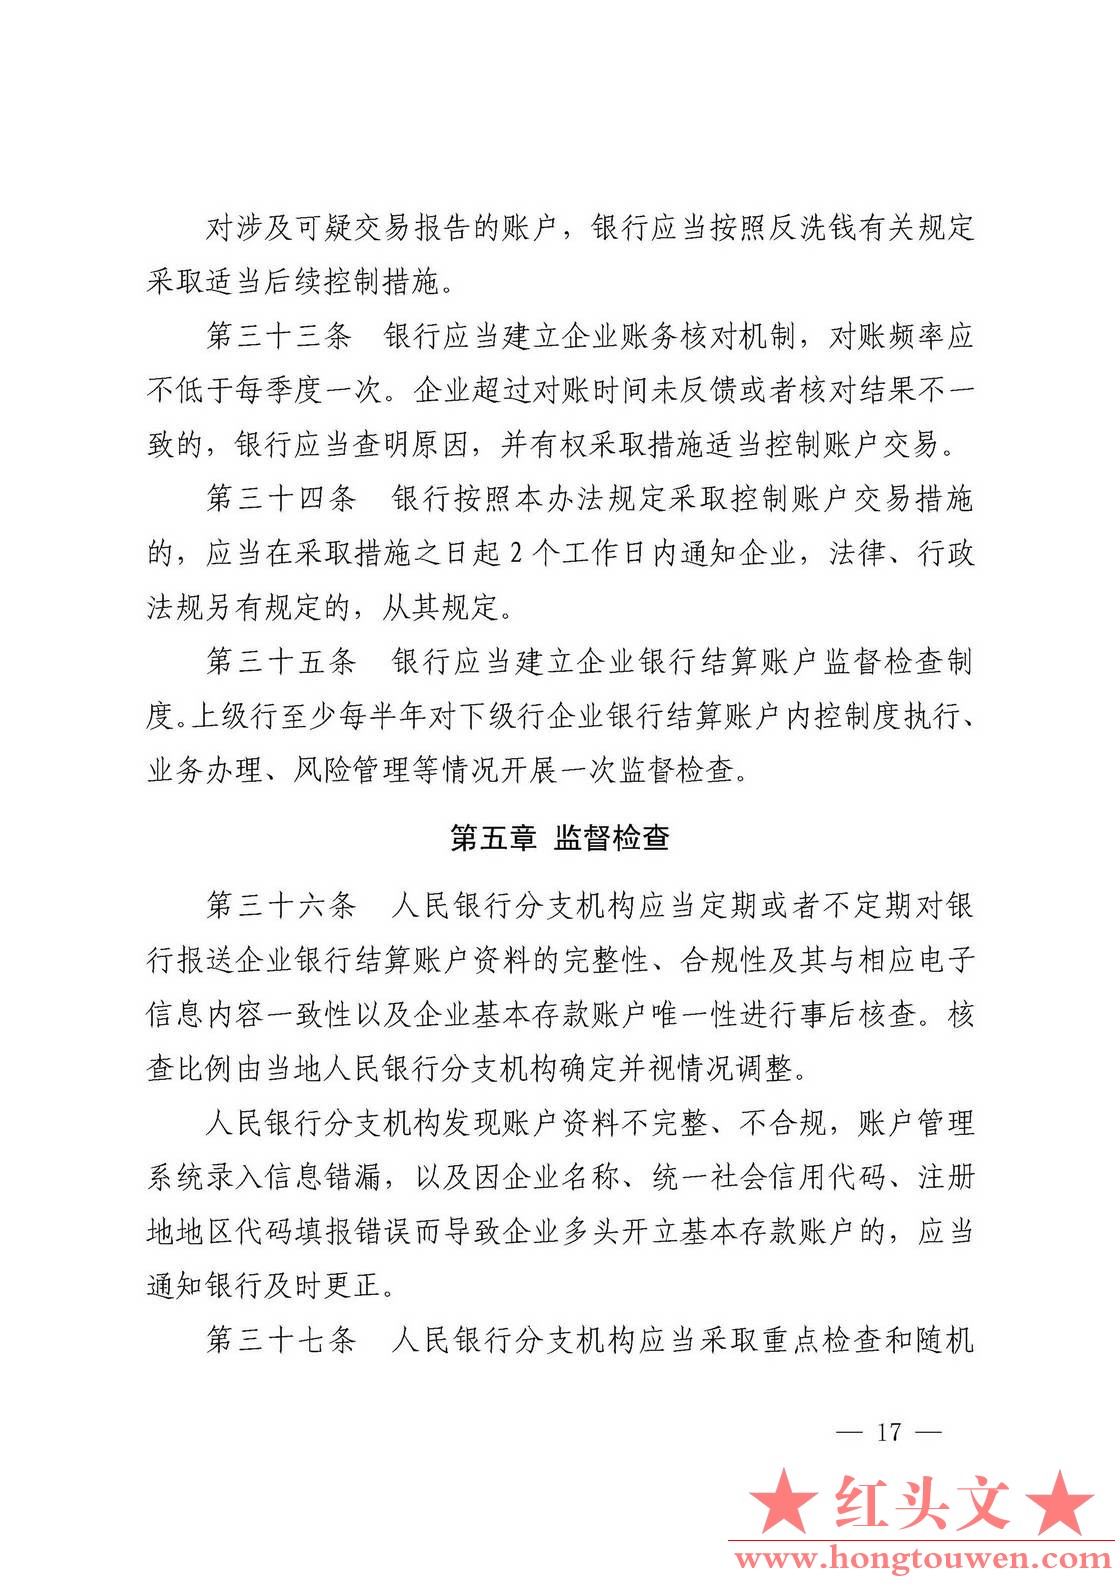 银发[2019]41号-中国人民银行关于取消企业银行账户许可的通知_页面_17.jpg.jpg